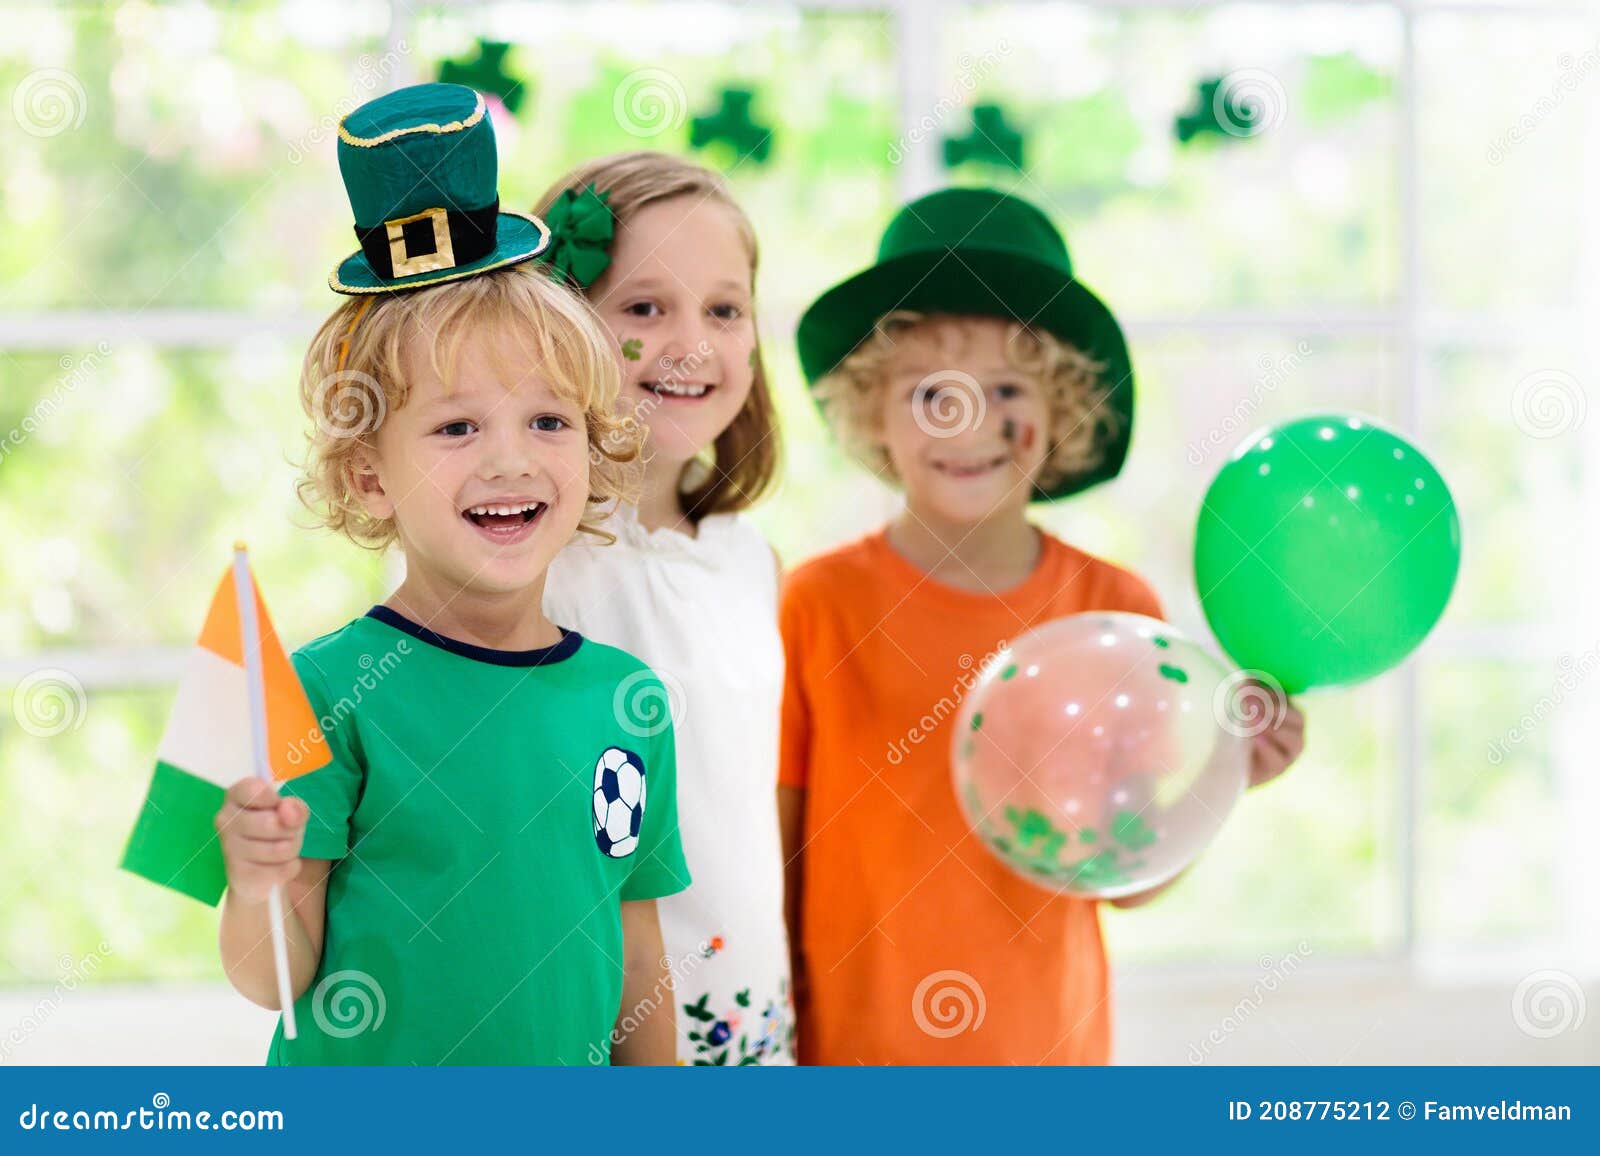 kids celebrate st patrick day. irish holiday